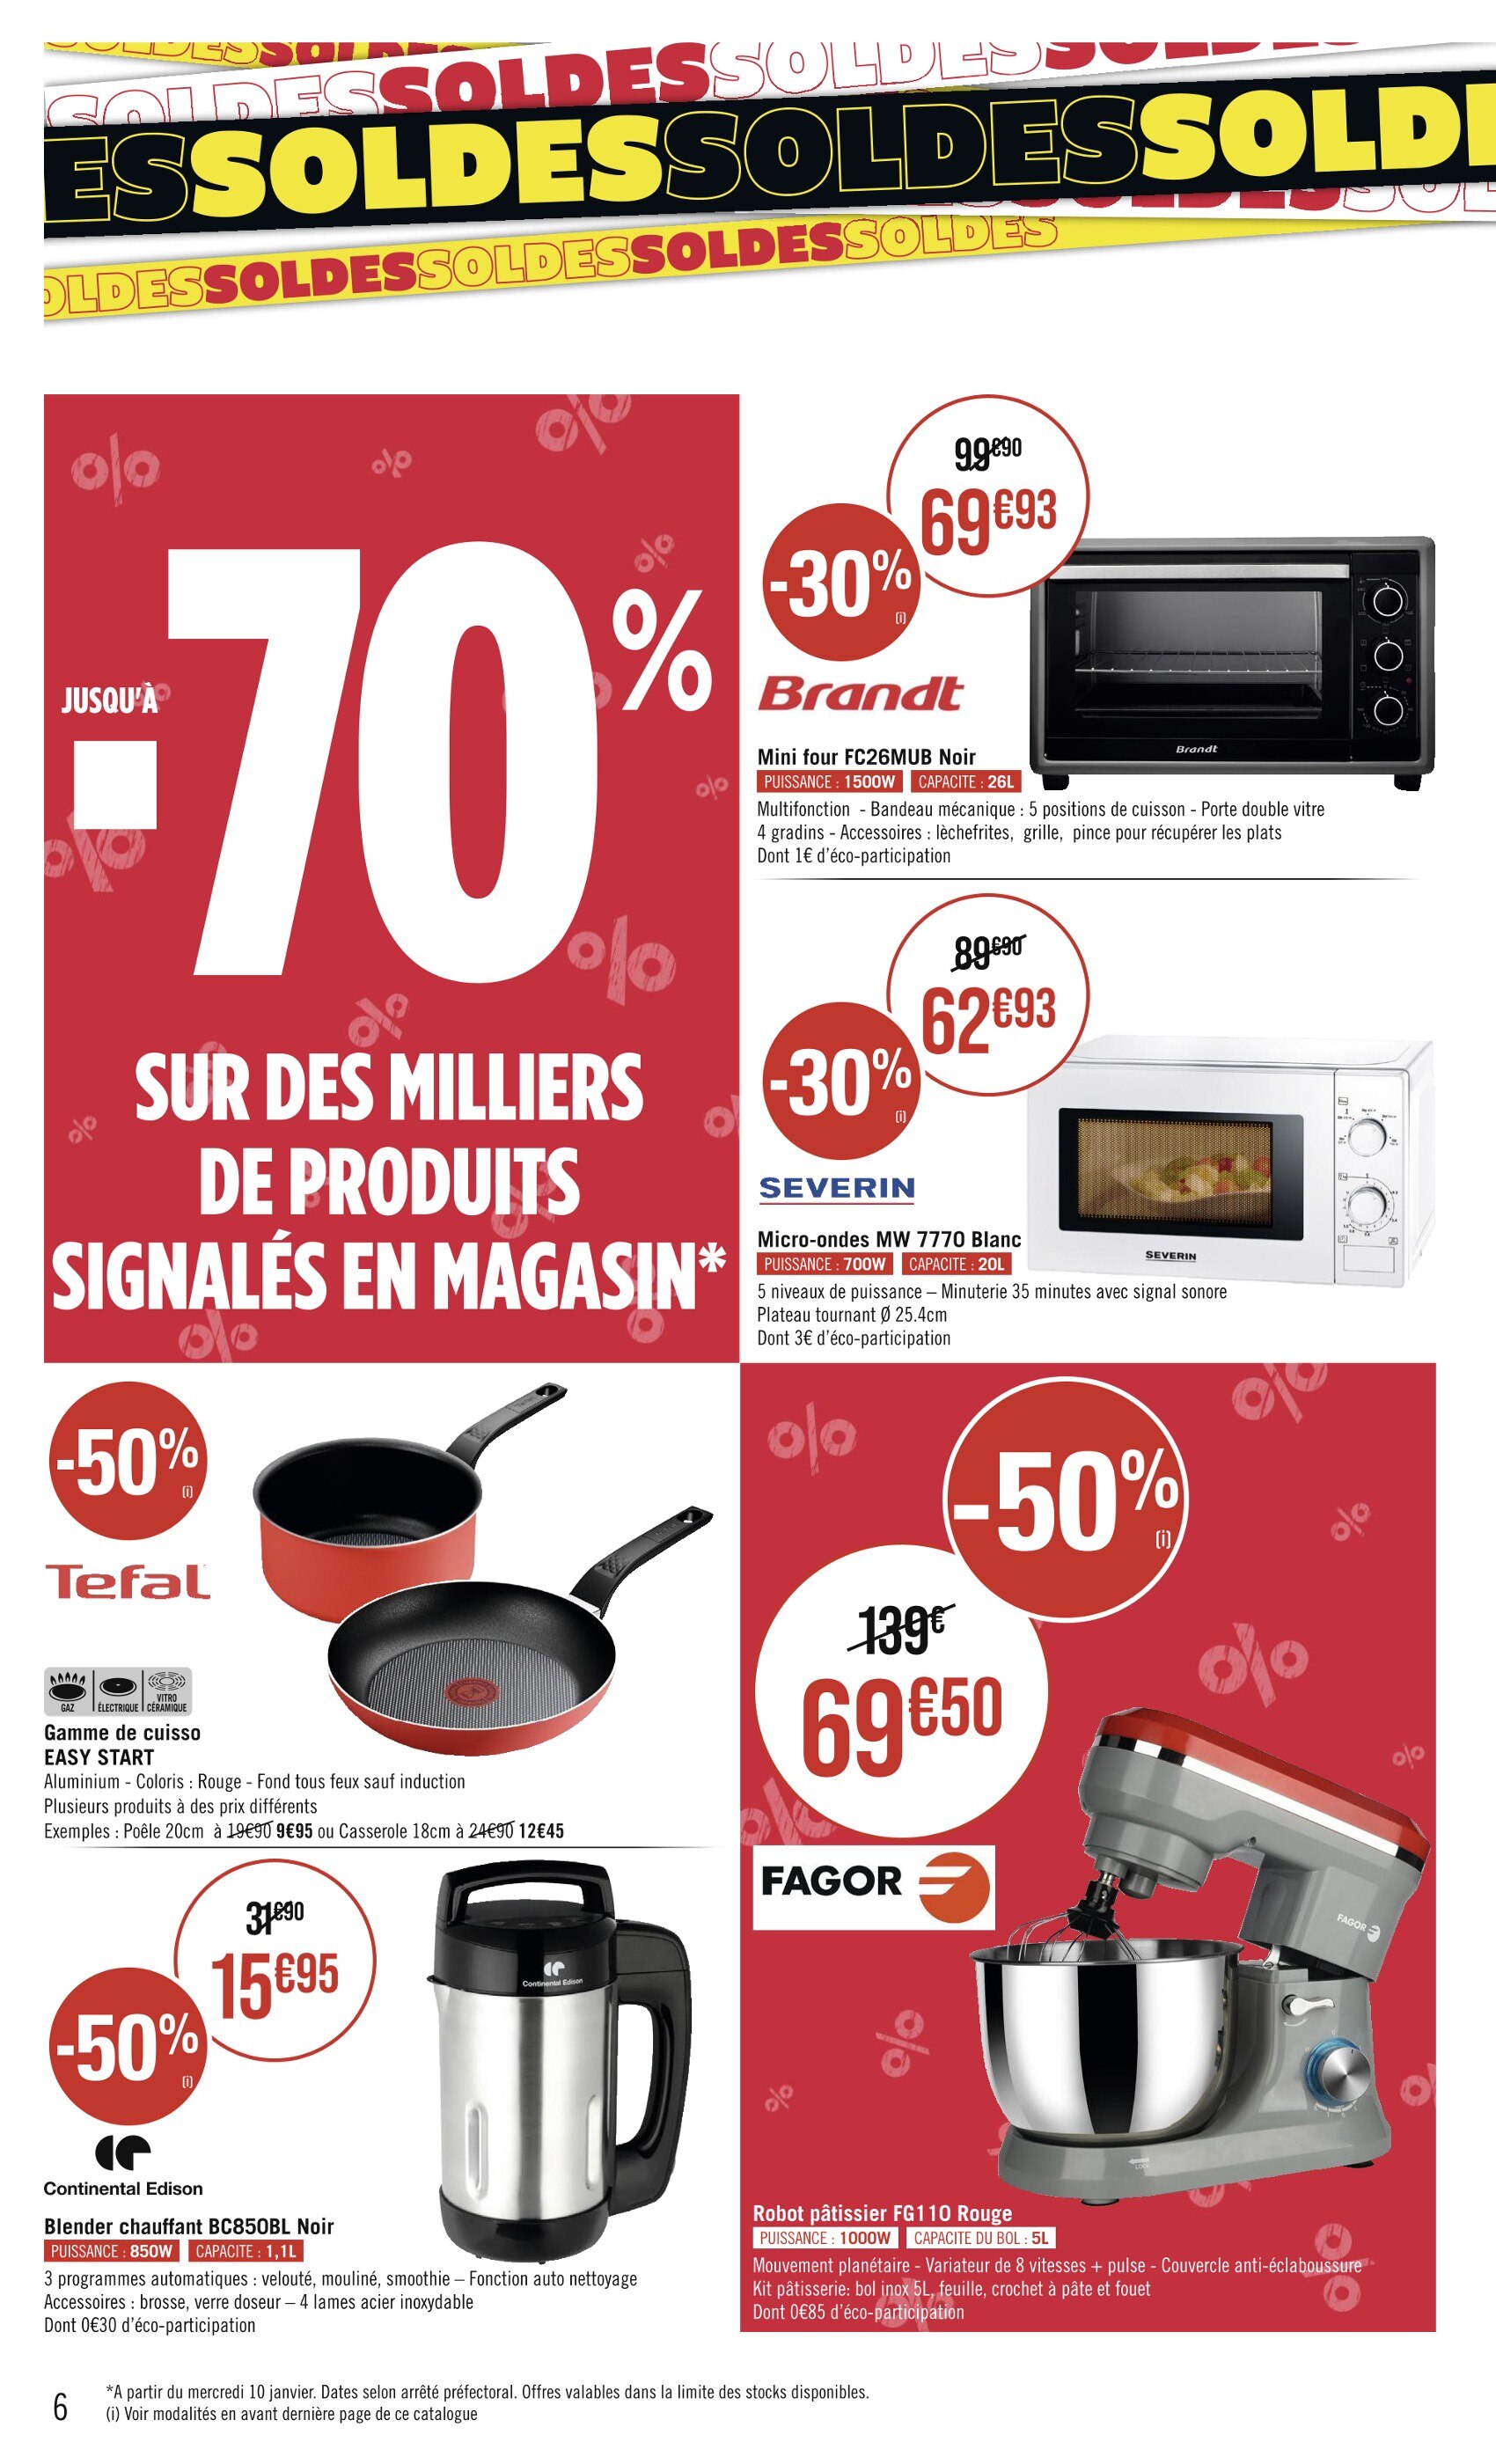 Carrefour : micro-ondes Bluesky pas cher à 39,90 €